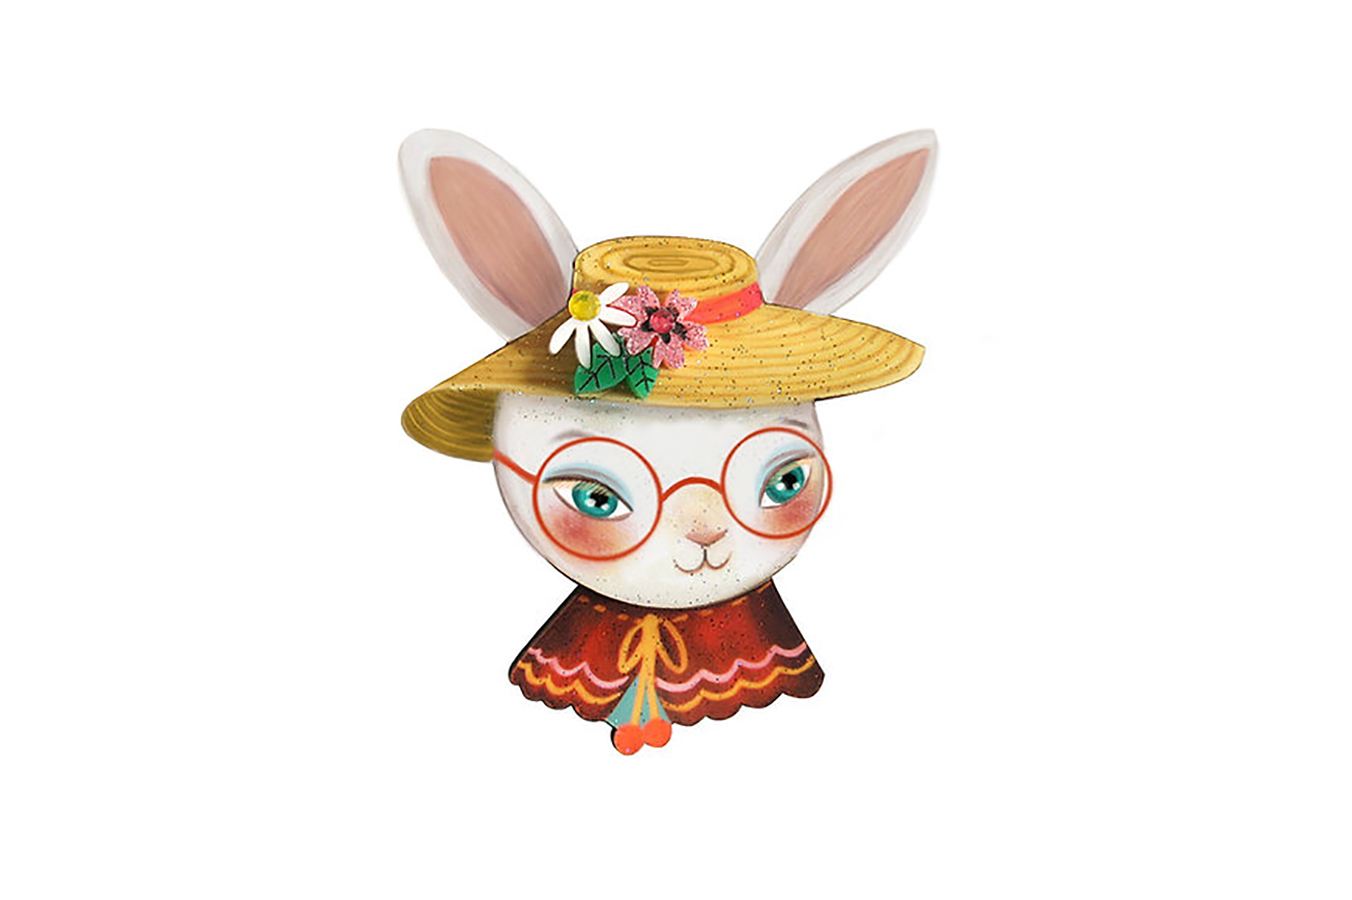 Vintage Brosche - Cute Bunny